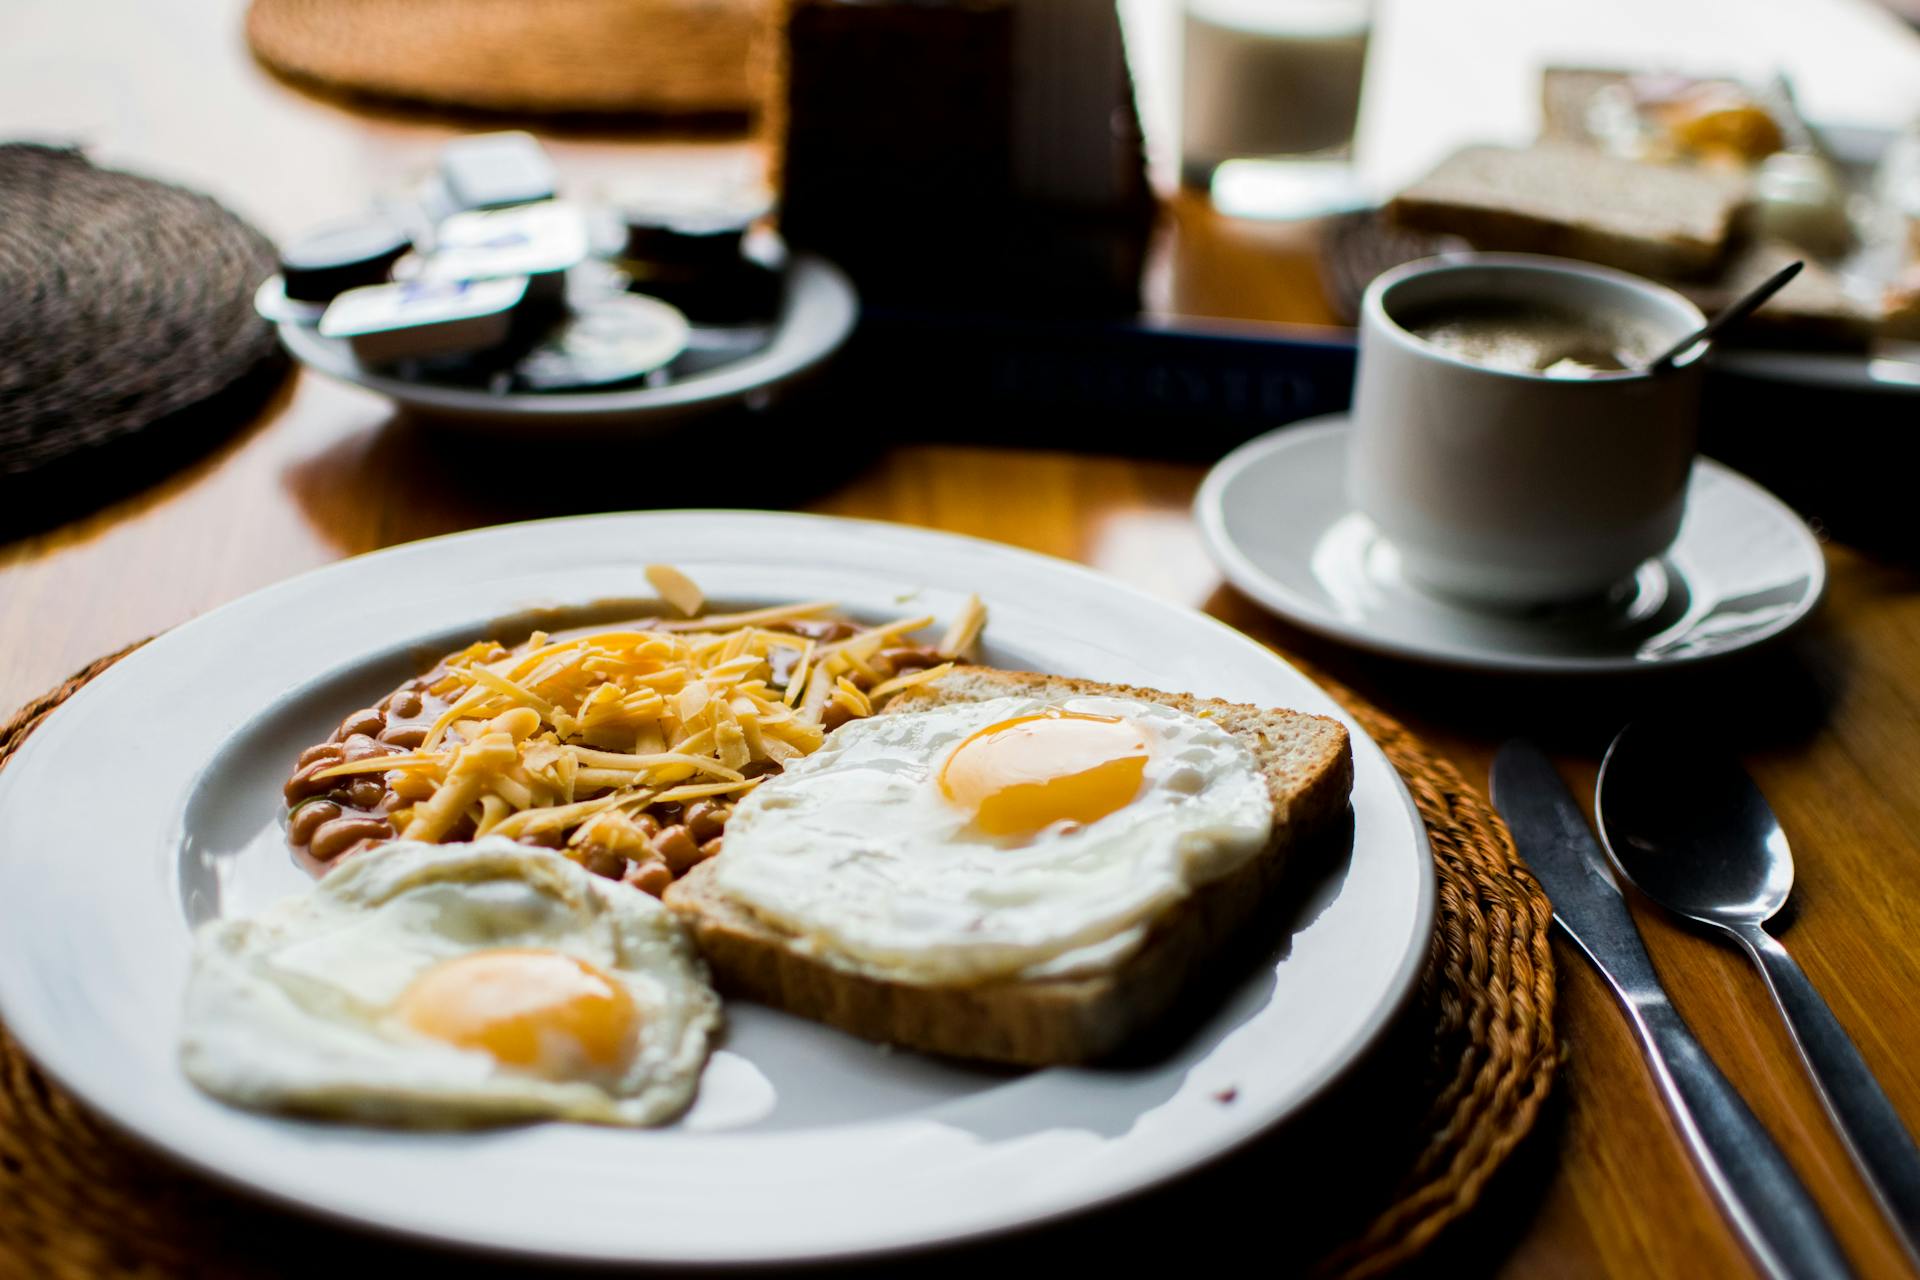 Das Frühstück liegt auf dem Tisch | Quelle: Pexels